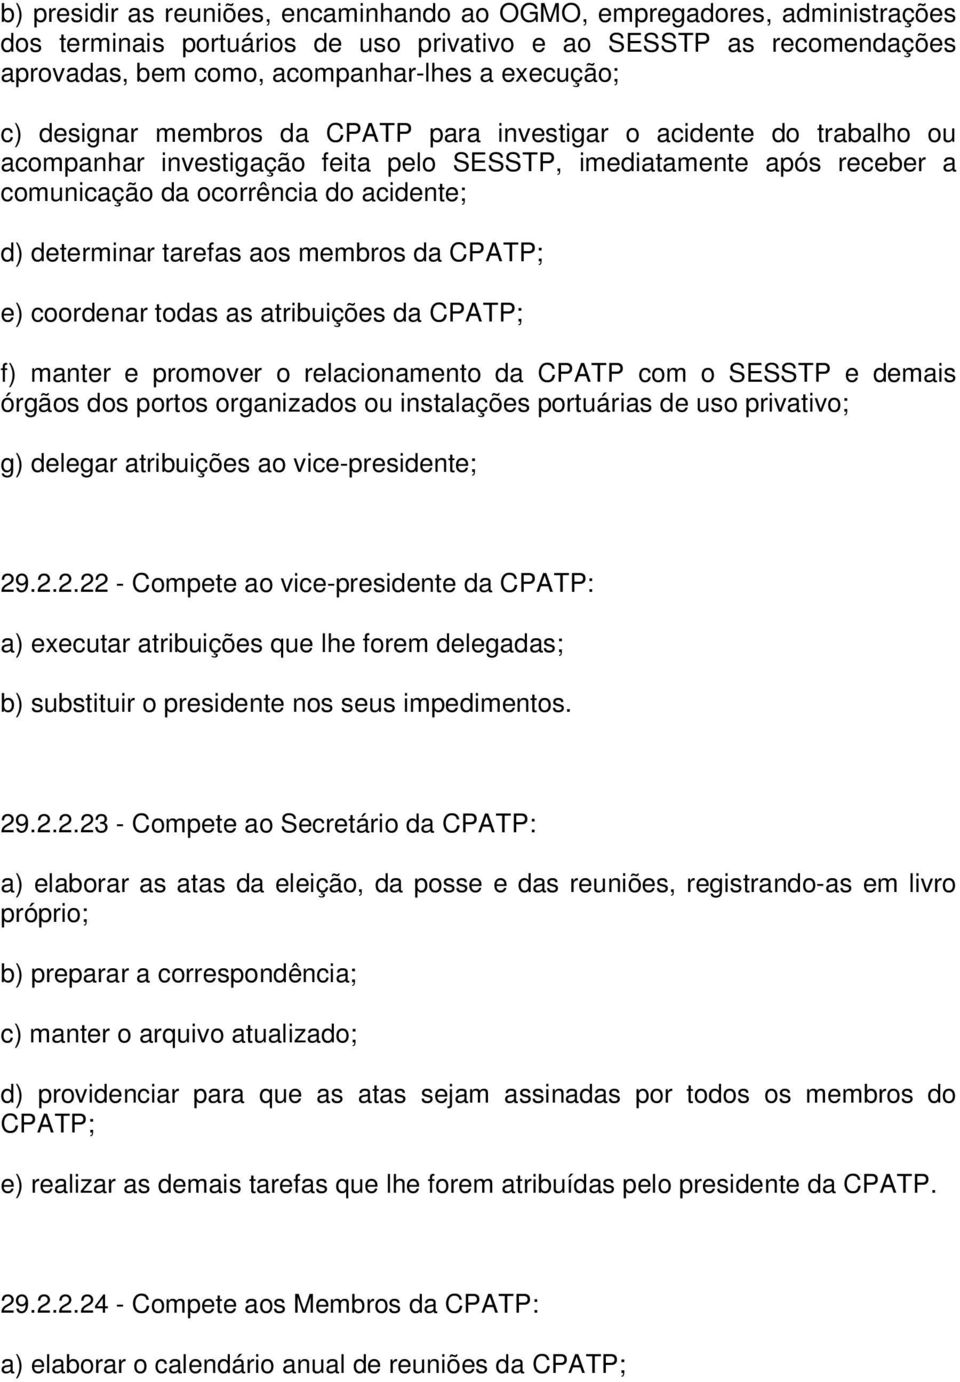 tarefas aos membros da CPATP; e) coordenar todas as atribuições da CPATP; f) manter e promover o relacionamento da CPATP com o SESSTP e demais órgãos dos portos organizados ou instalações portuárias